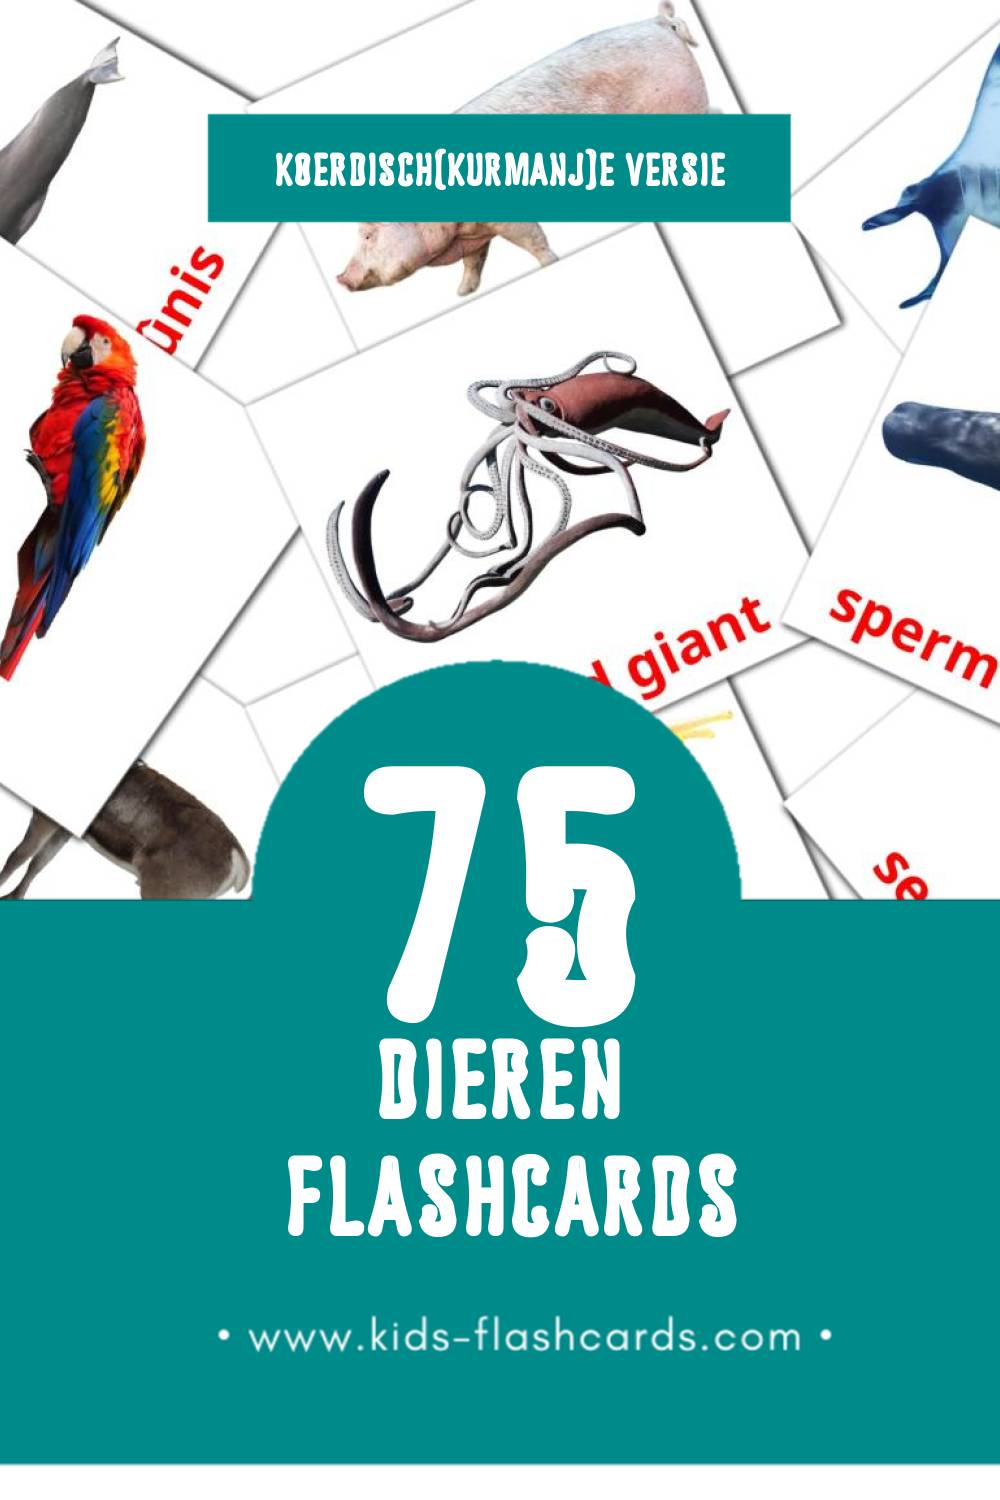 Visuele Candar Flashcards voor Kleuters (75 kaarten in het Koerdisch(kurmanj))